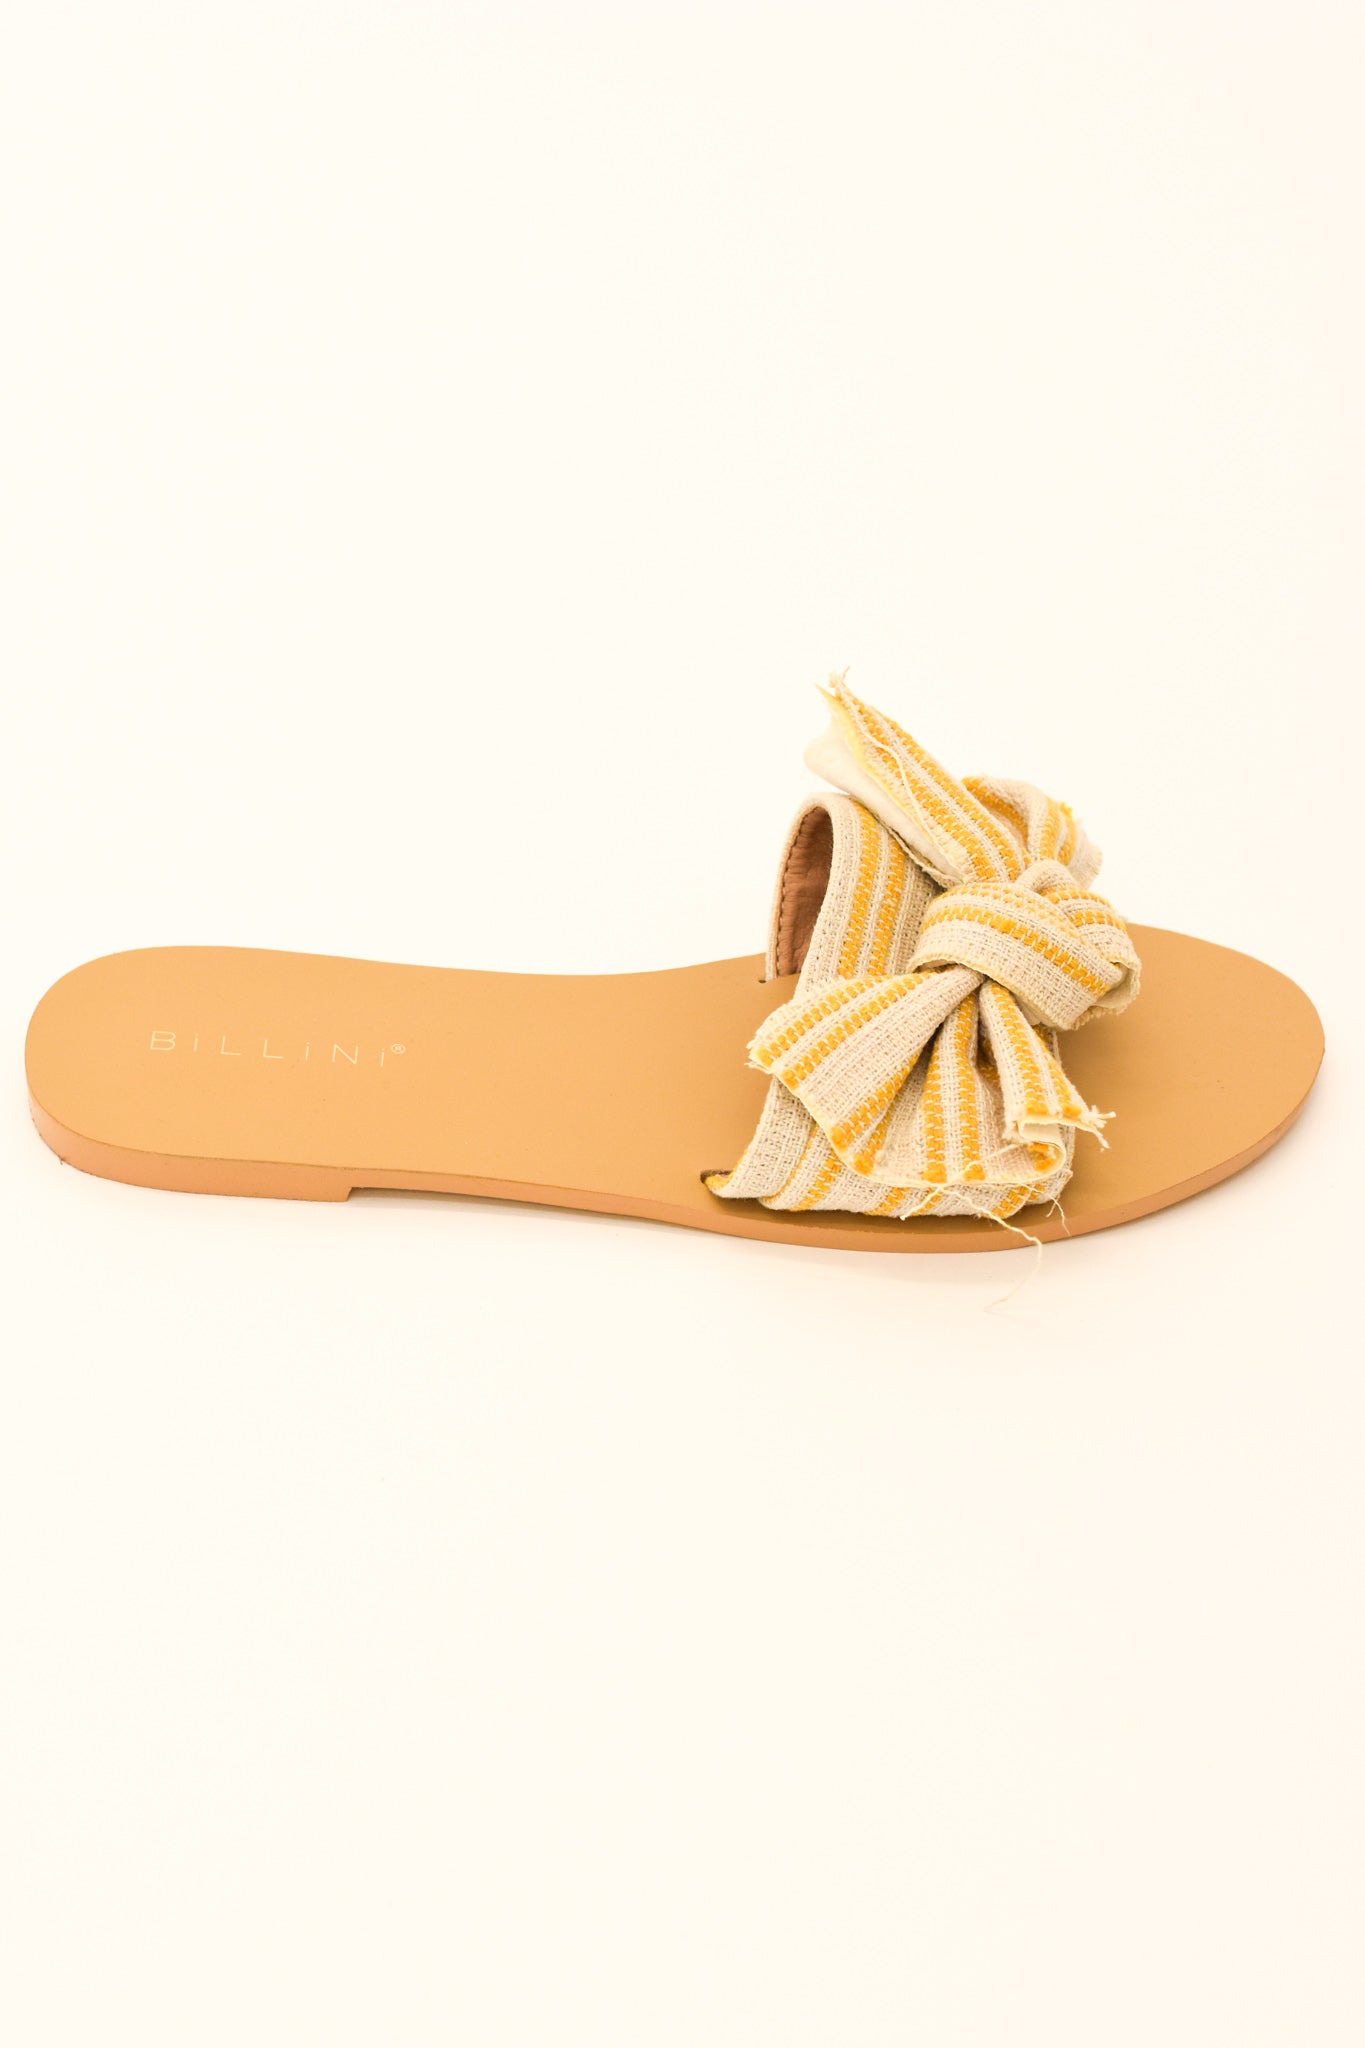 Billini Alpha Sandals - Mustard Stripe